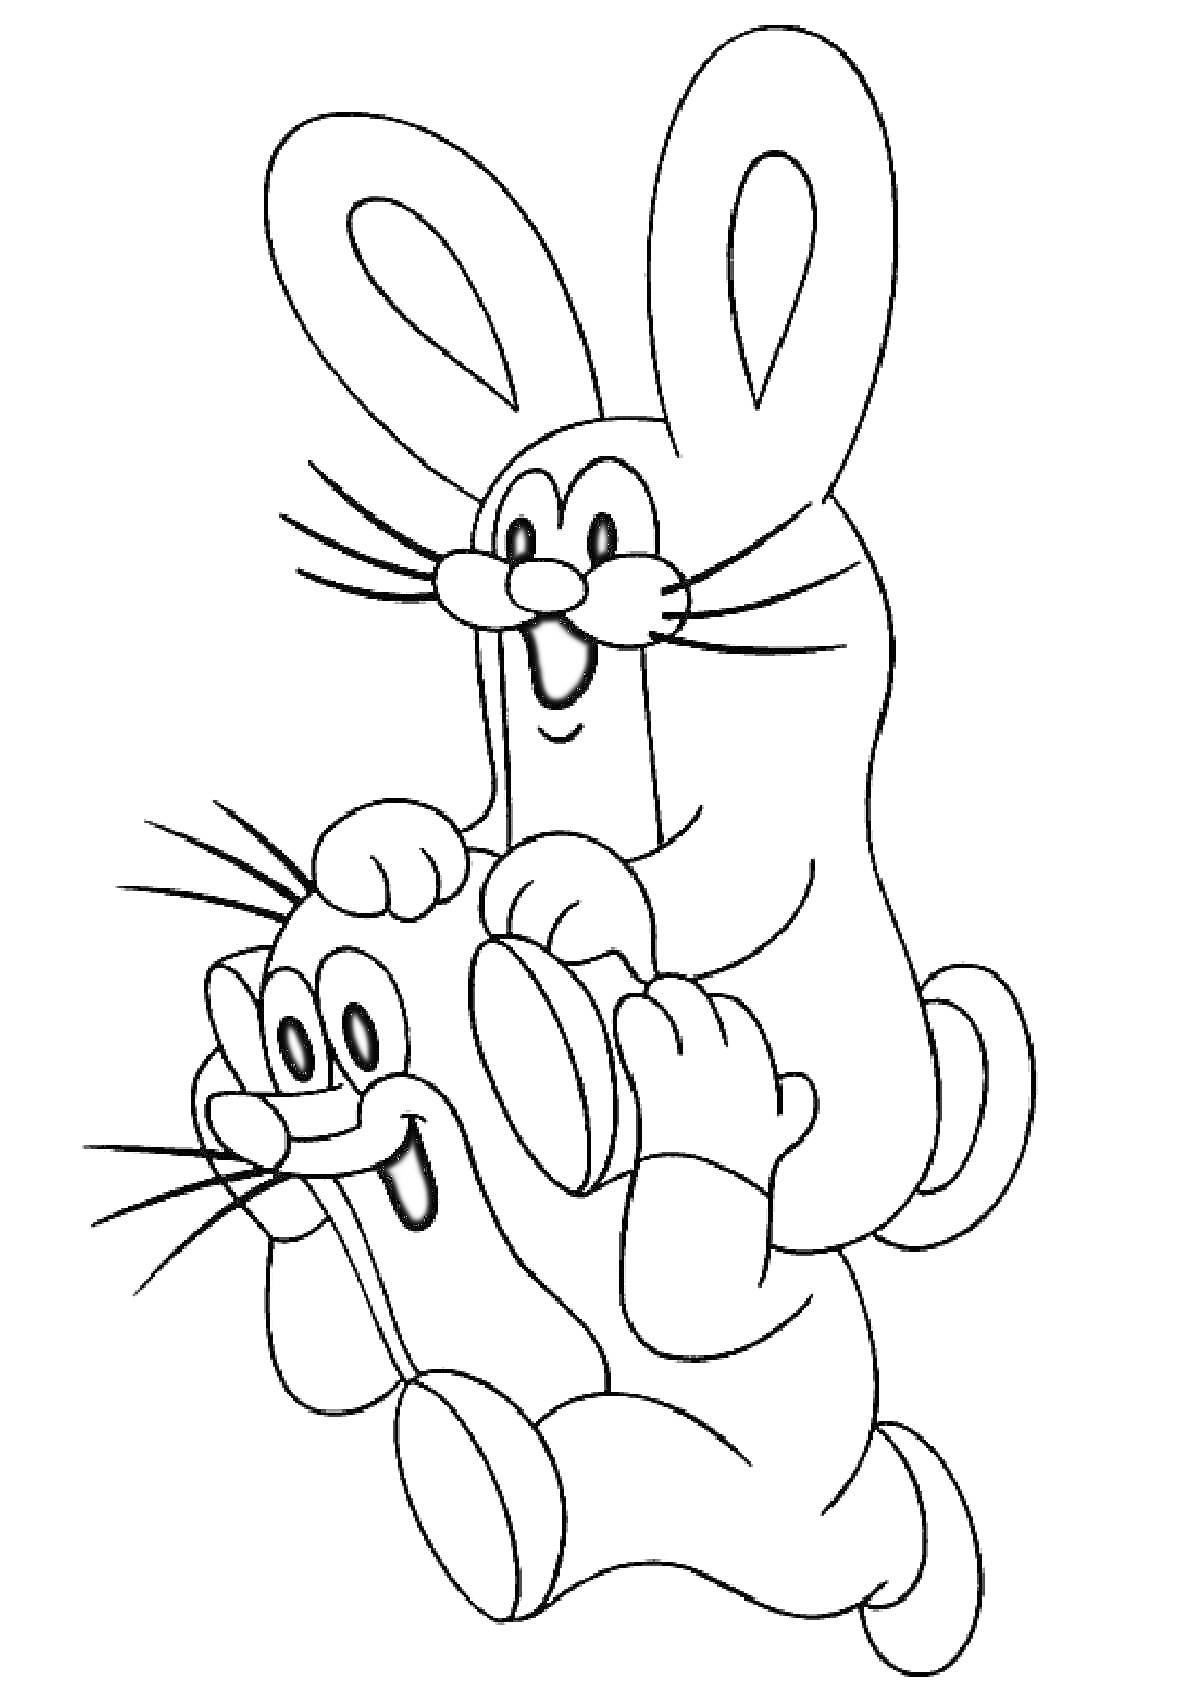 Раскраска Крот и заяц, крот держит зайца на плечах